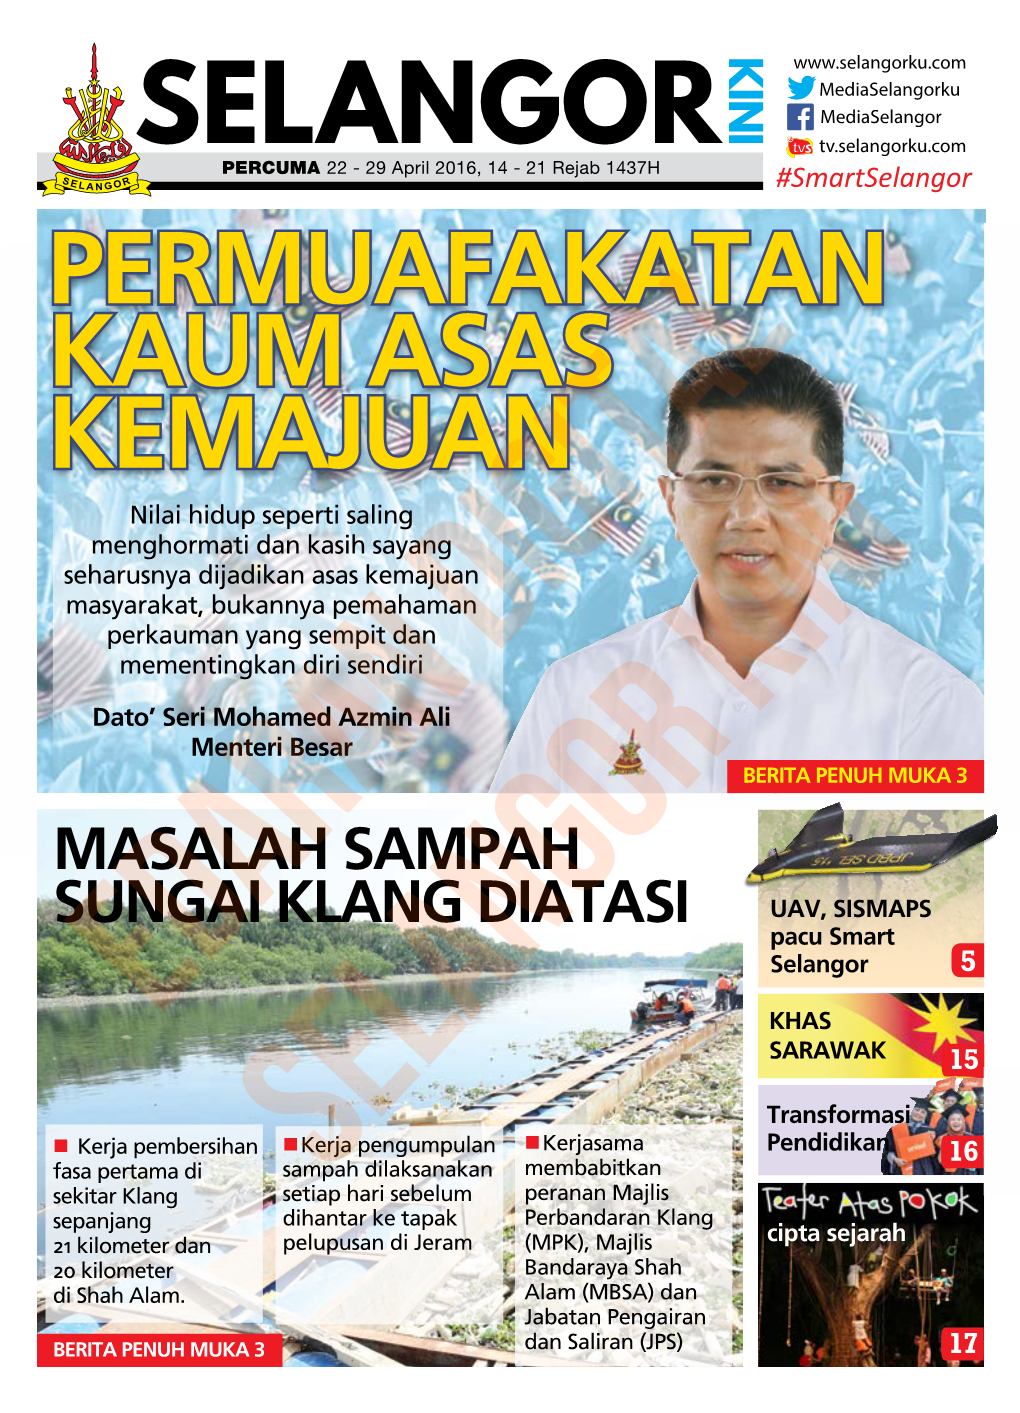 MASALAH SAMPAH SUNGAI KLANG DIATASI UAV, SISMAPS Pacu Smart Selangor 5